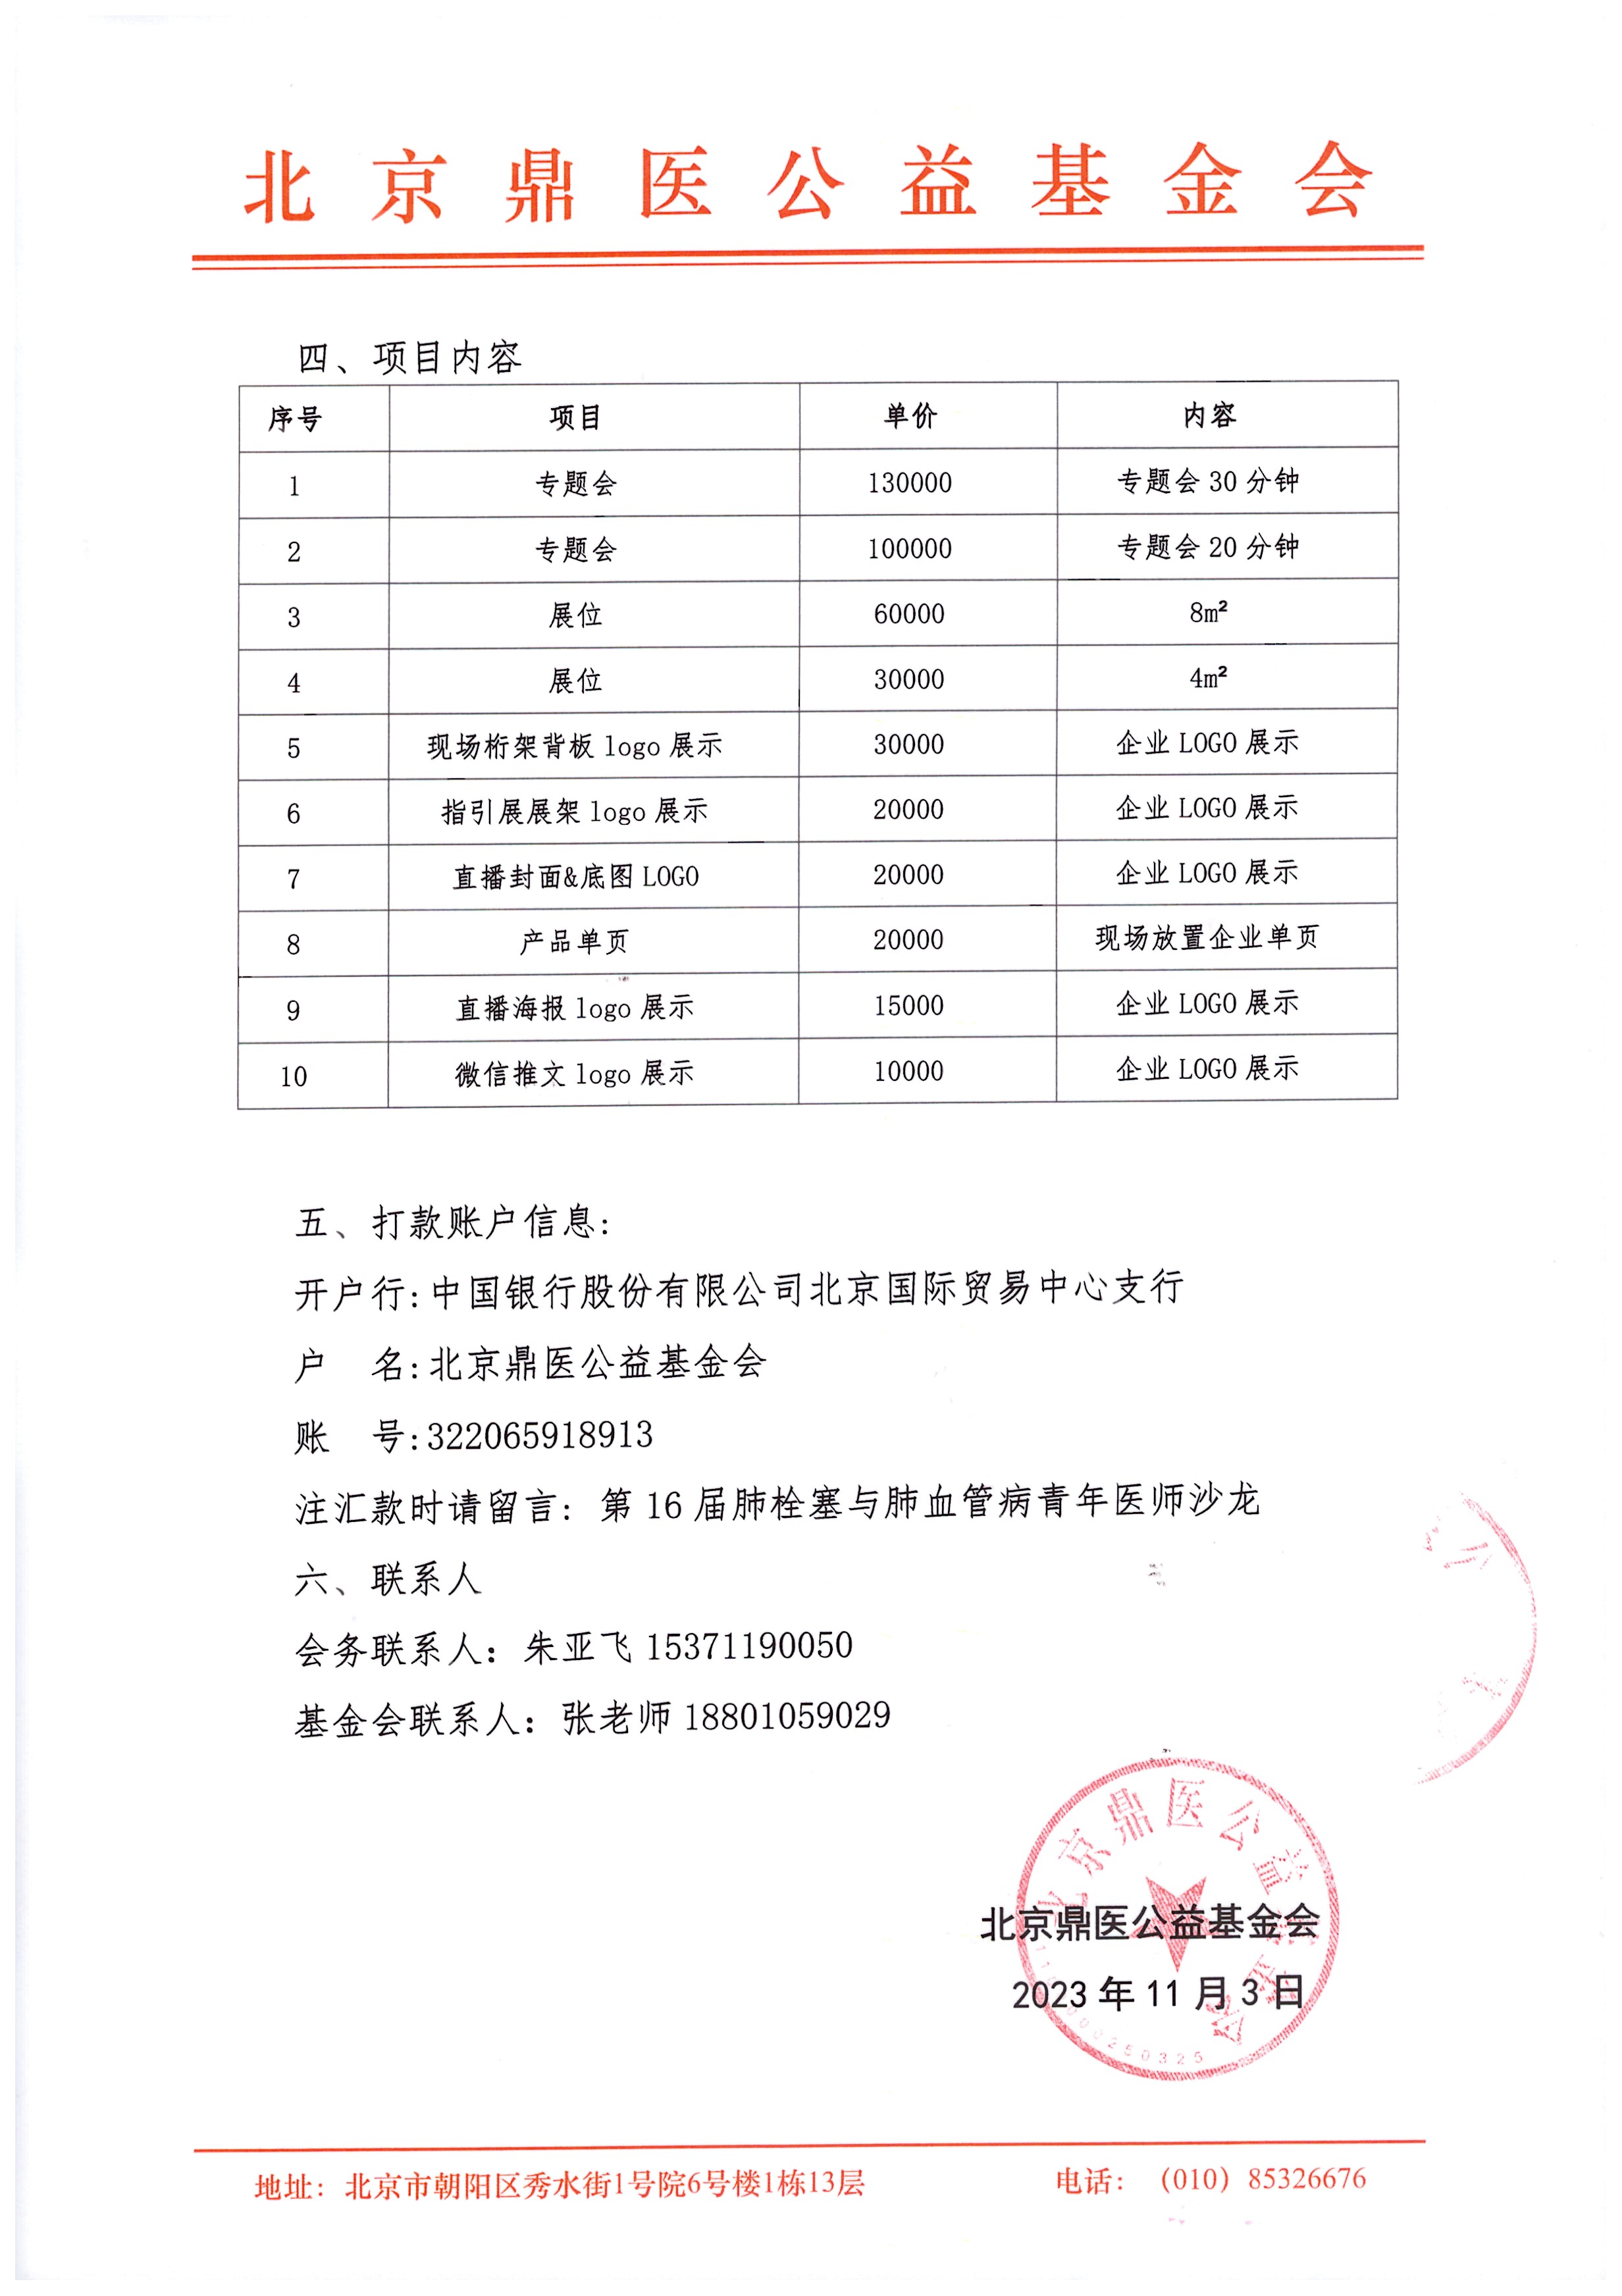 第16届肺栓塞与肺血管病青年医师沙龙-招商函_页面_2.jpg